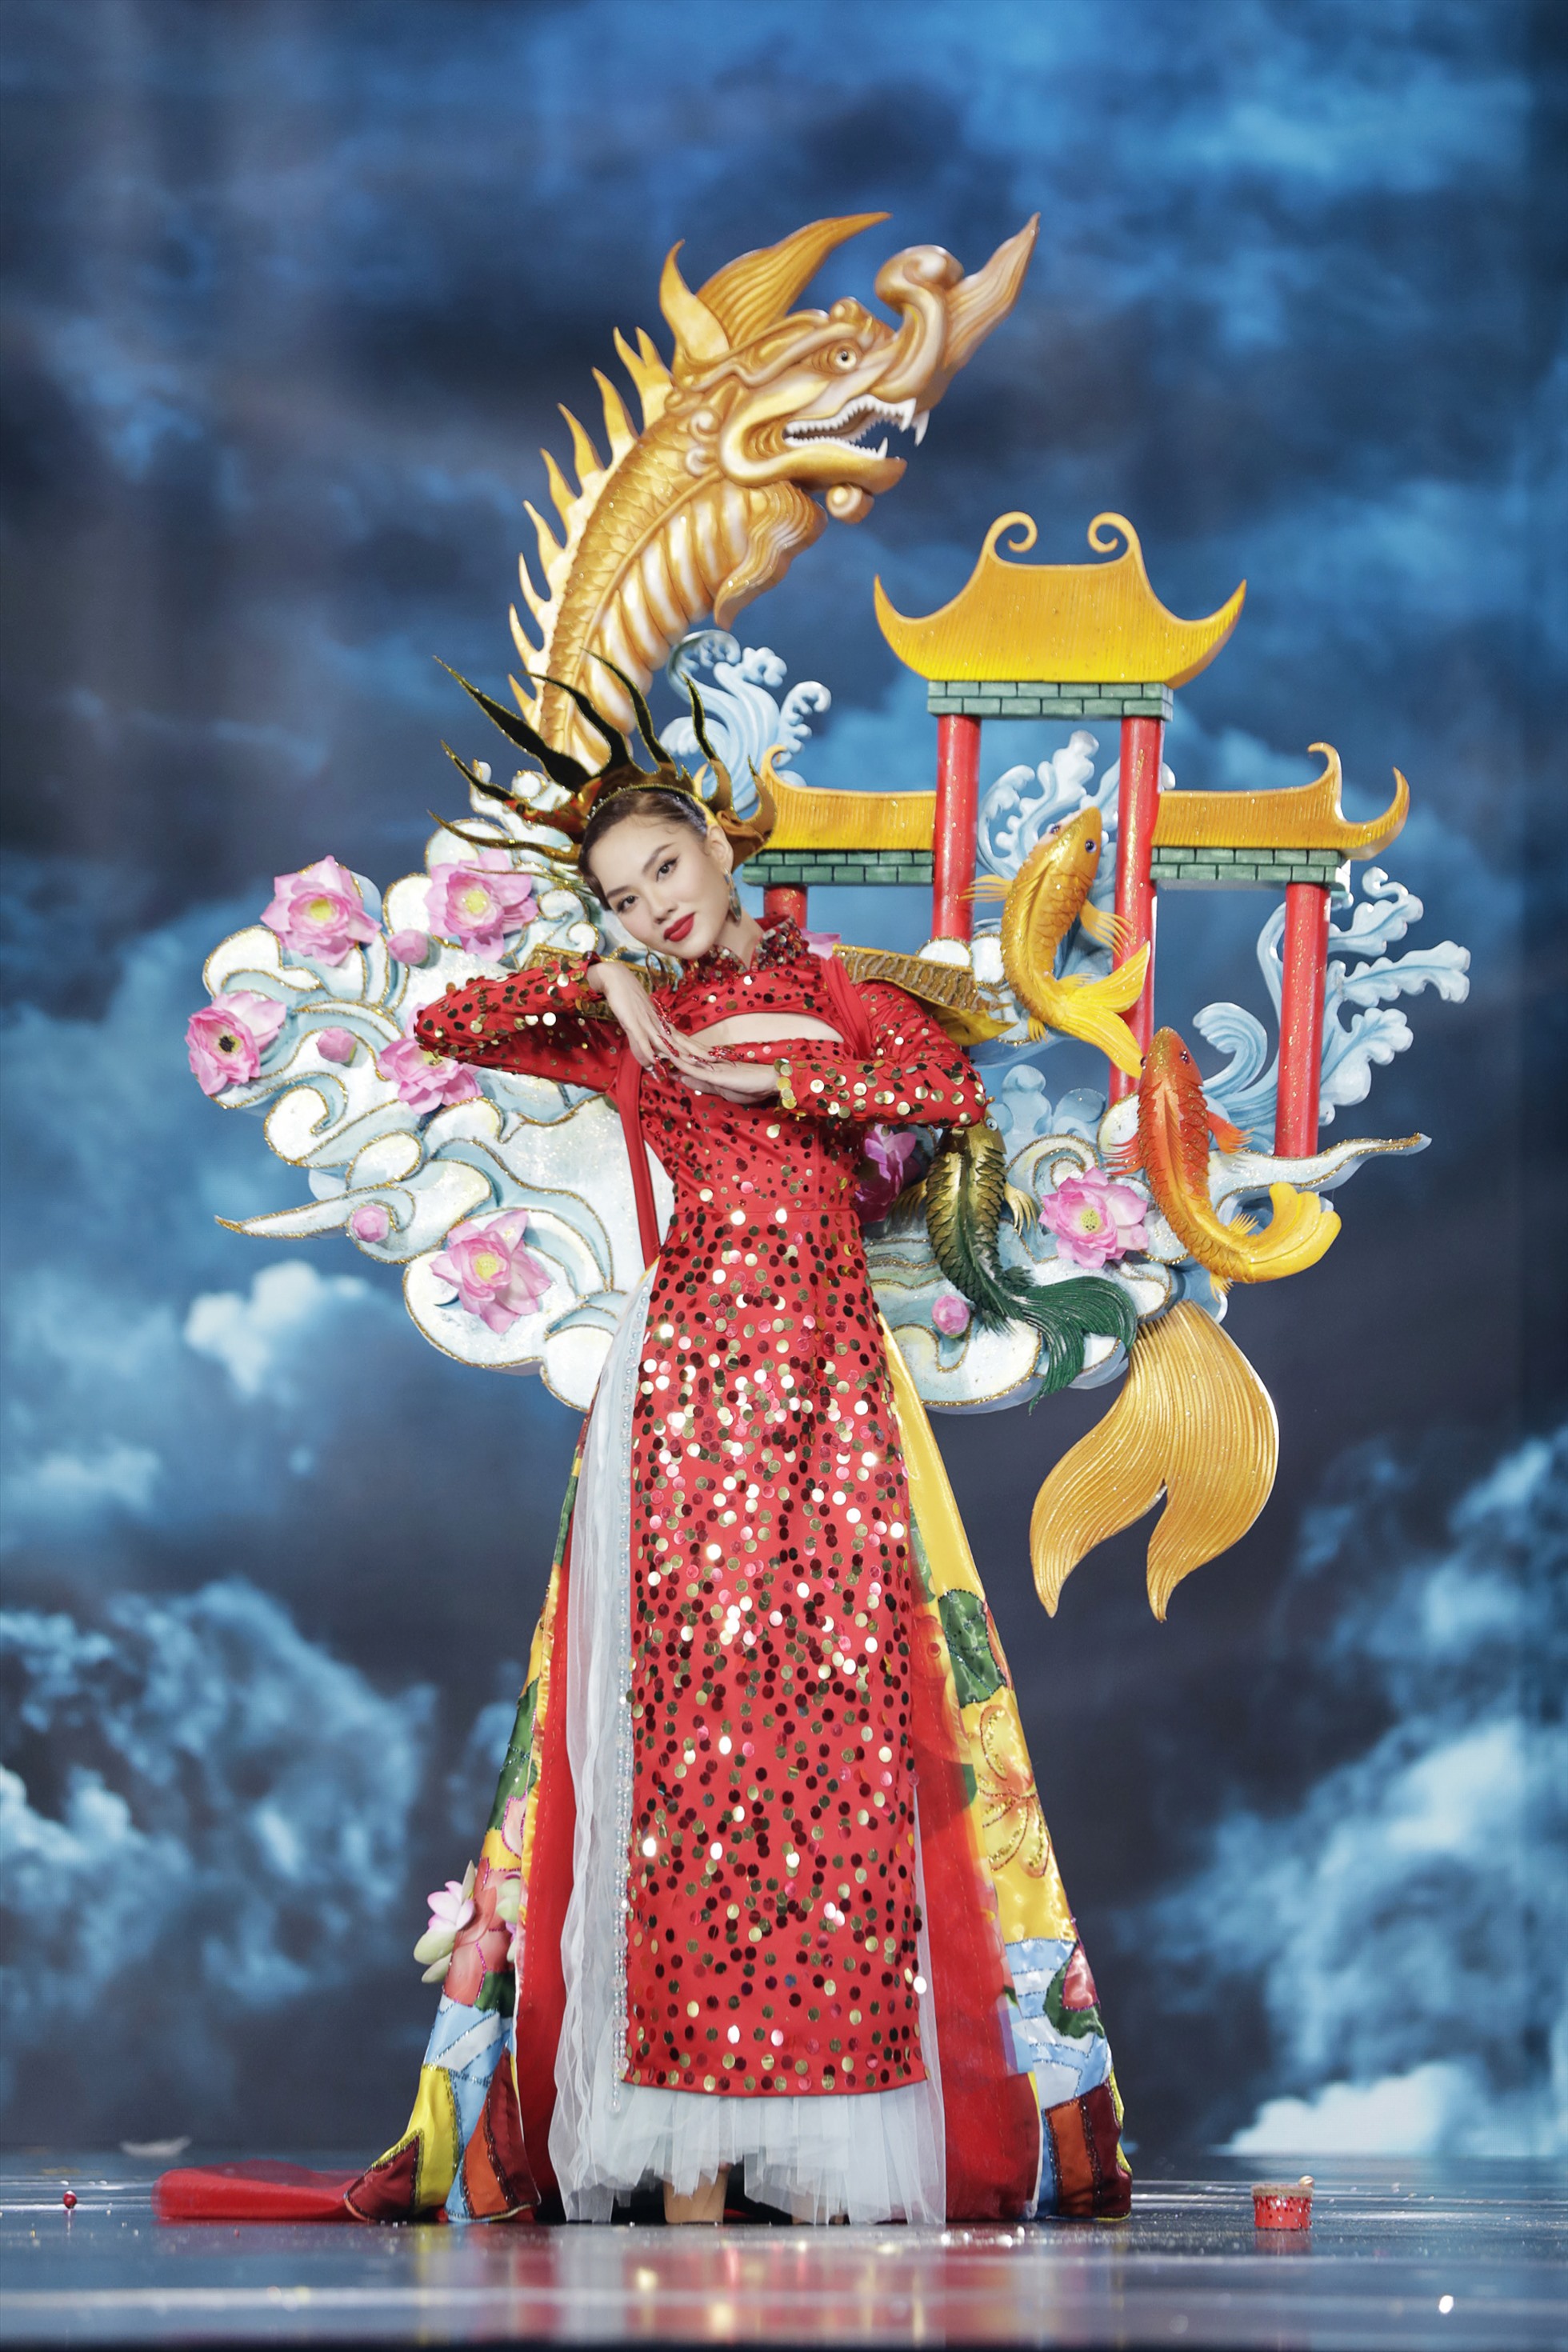 Phần thi trang phục văn hóa dân tộc cũng là một phần thi được yêu thích tại Miss Grand International. Những bộ trang phục tham dự phần thi này thường được thiết kế màu sắc, độc đáo và lấy ý tưởng từ những nét đẹp văn hóa. Ảnh: MGVN.